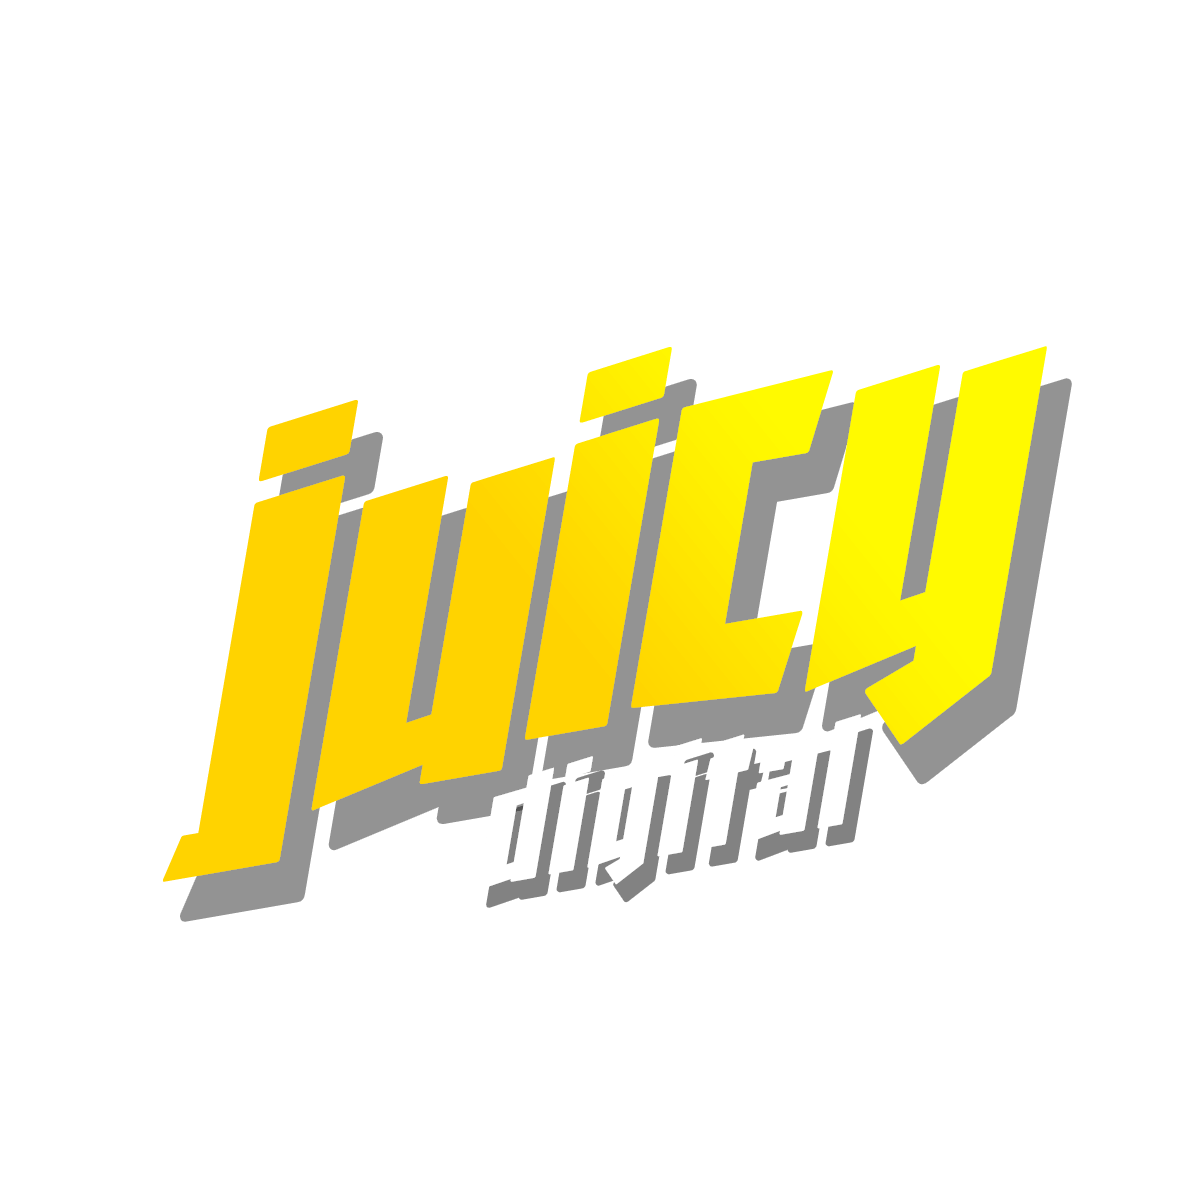 juicy-yellow